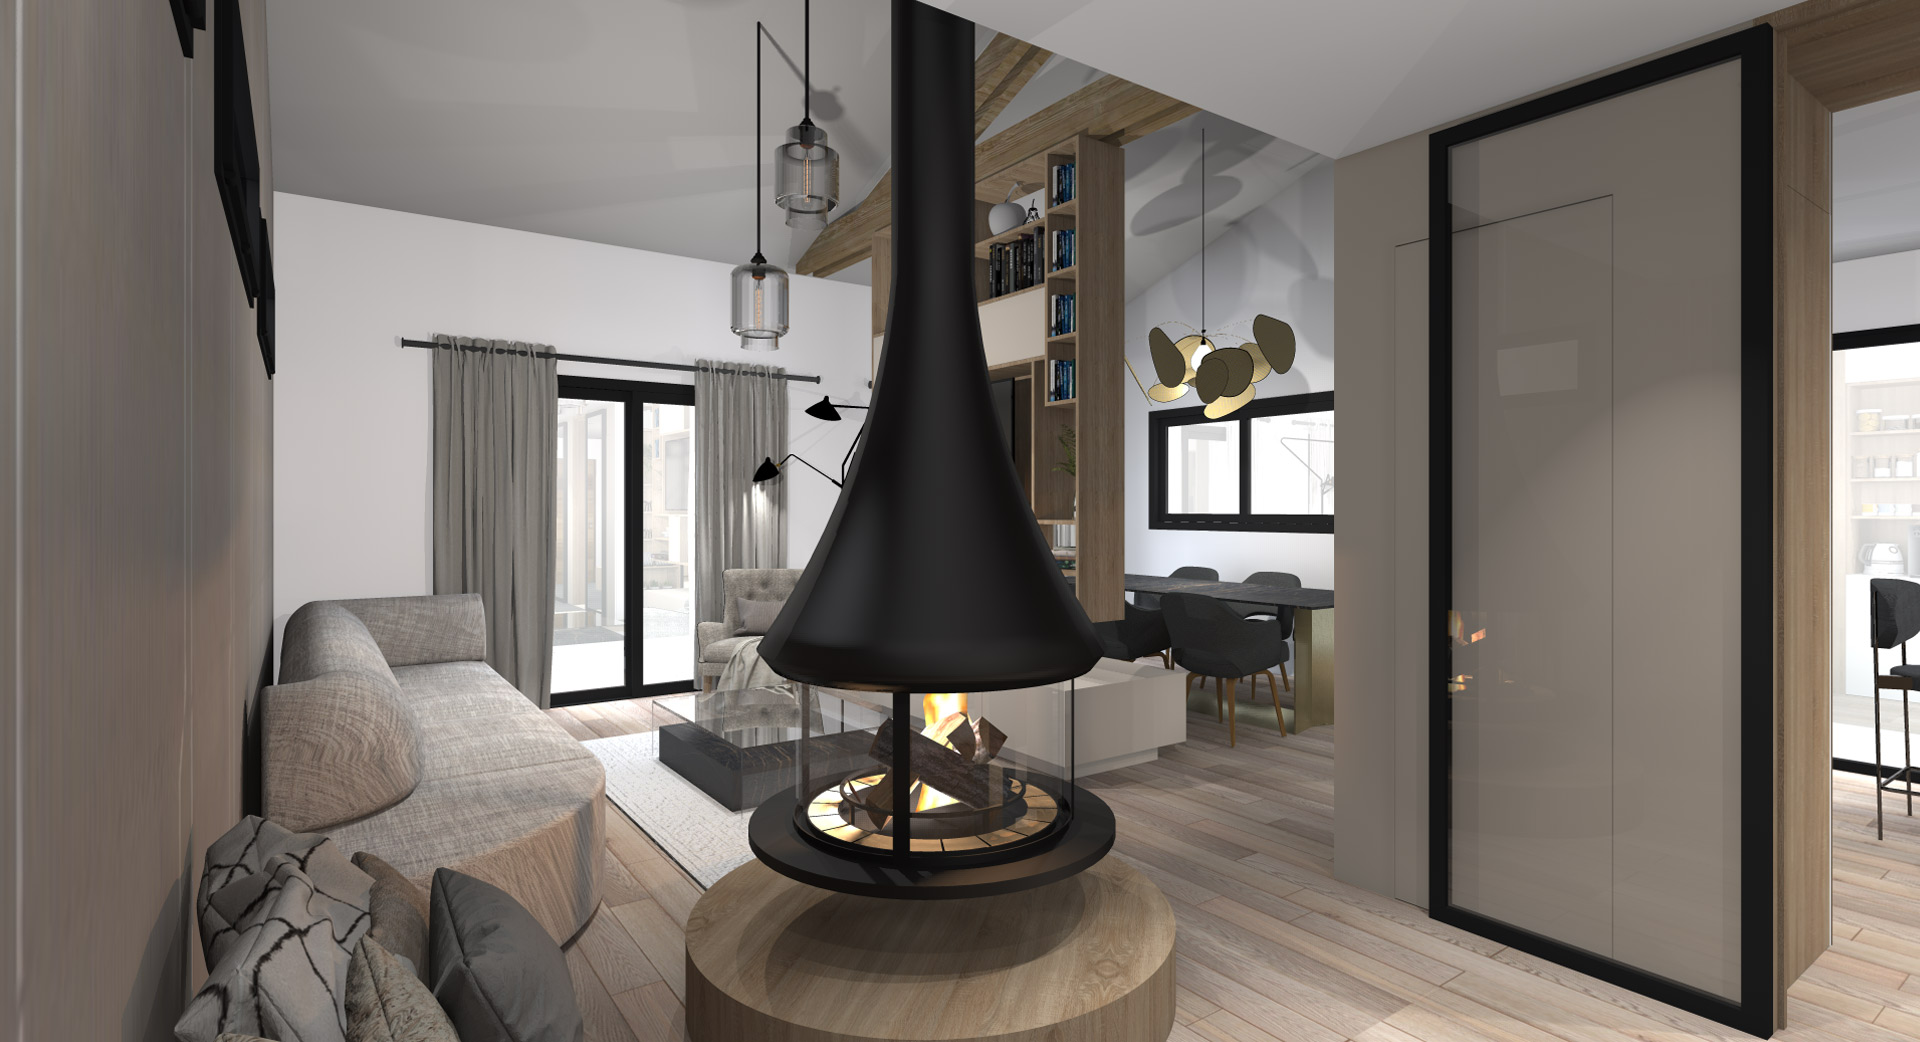 KLR : Architecture intérieure d’une maison neuve à Paris, séjour avec cheminée.